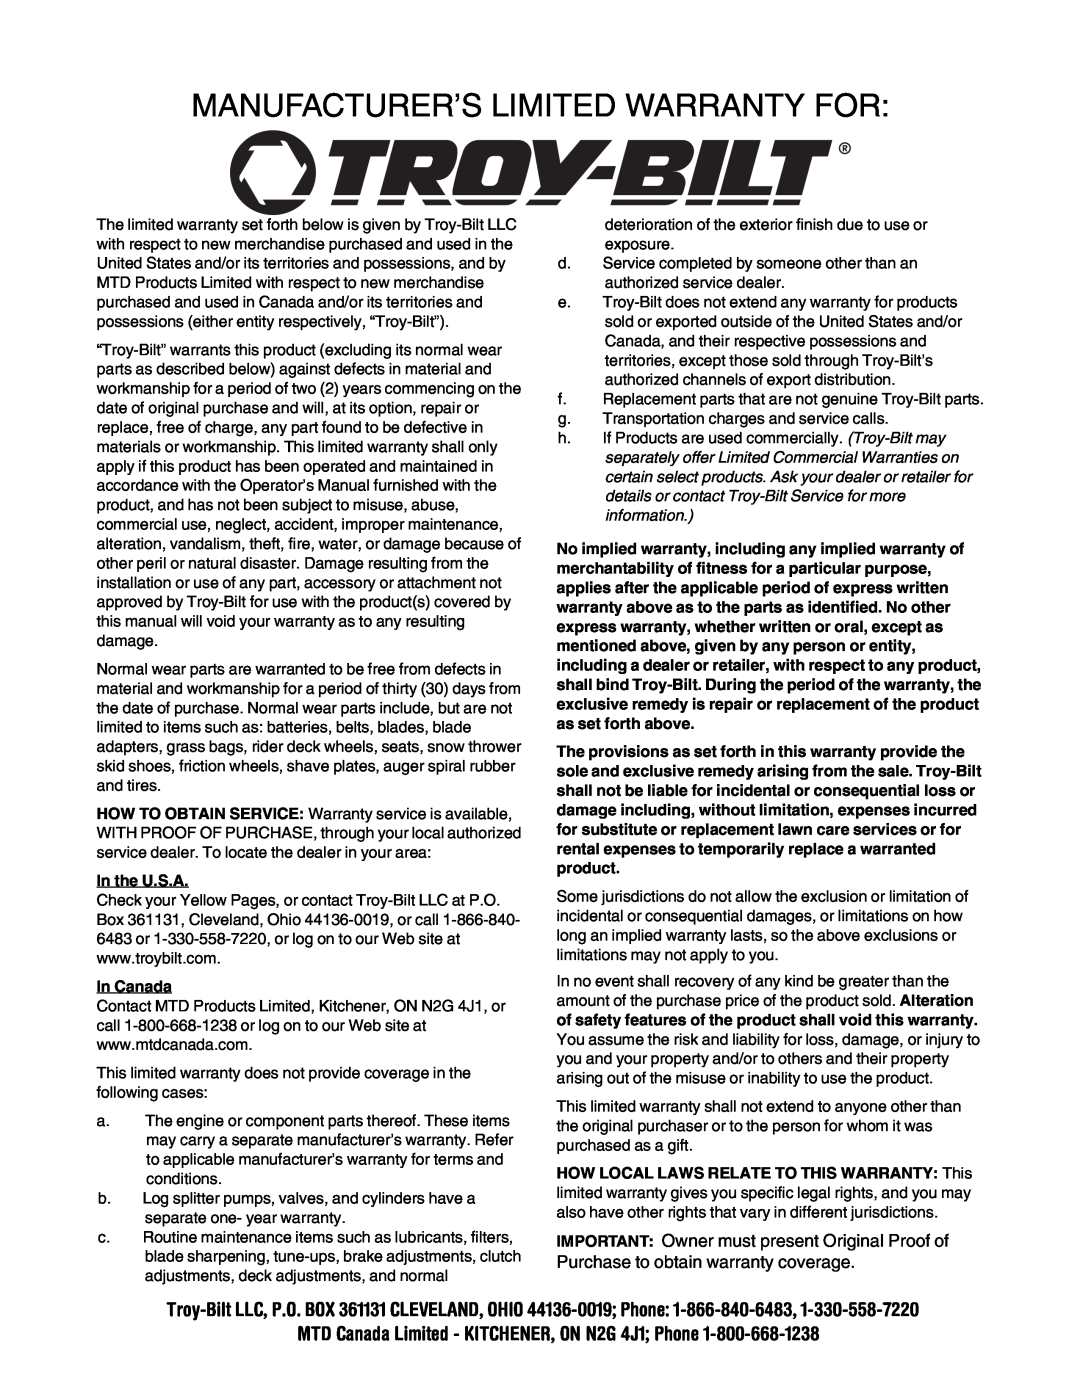 Troy-Bilt 1130, 1028 manual Manufacturer’S Limited Warranty For 